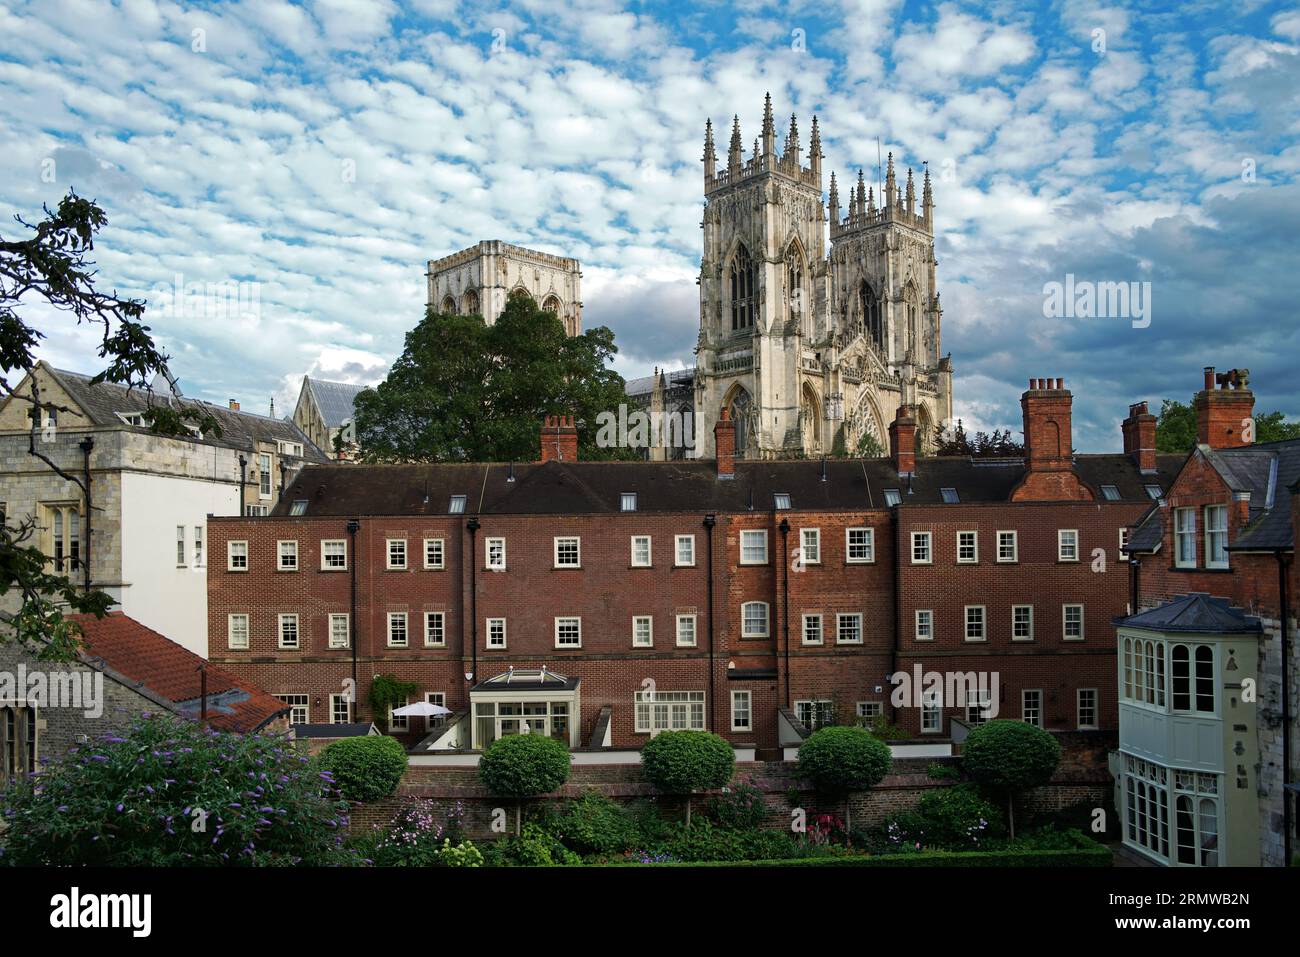 Cette image d'horizon de York au Royaume-Uni montre York Minster derrière un quartier résidentiel. La photographie a été prise depuis le mur de York. Banque D'Images